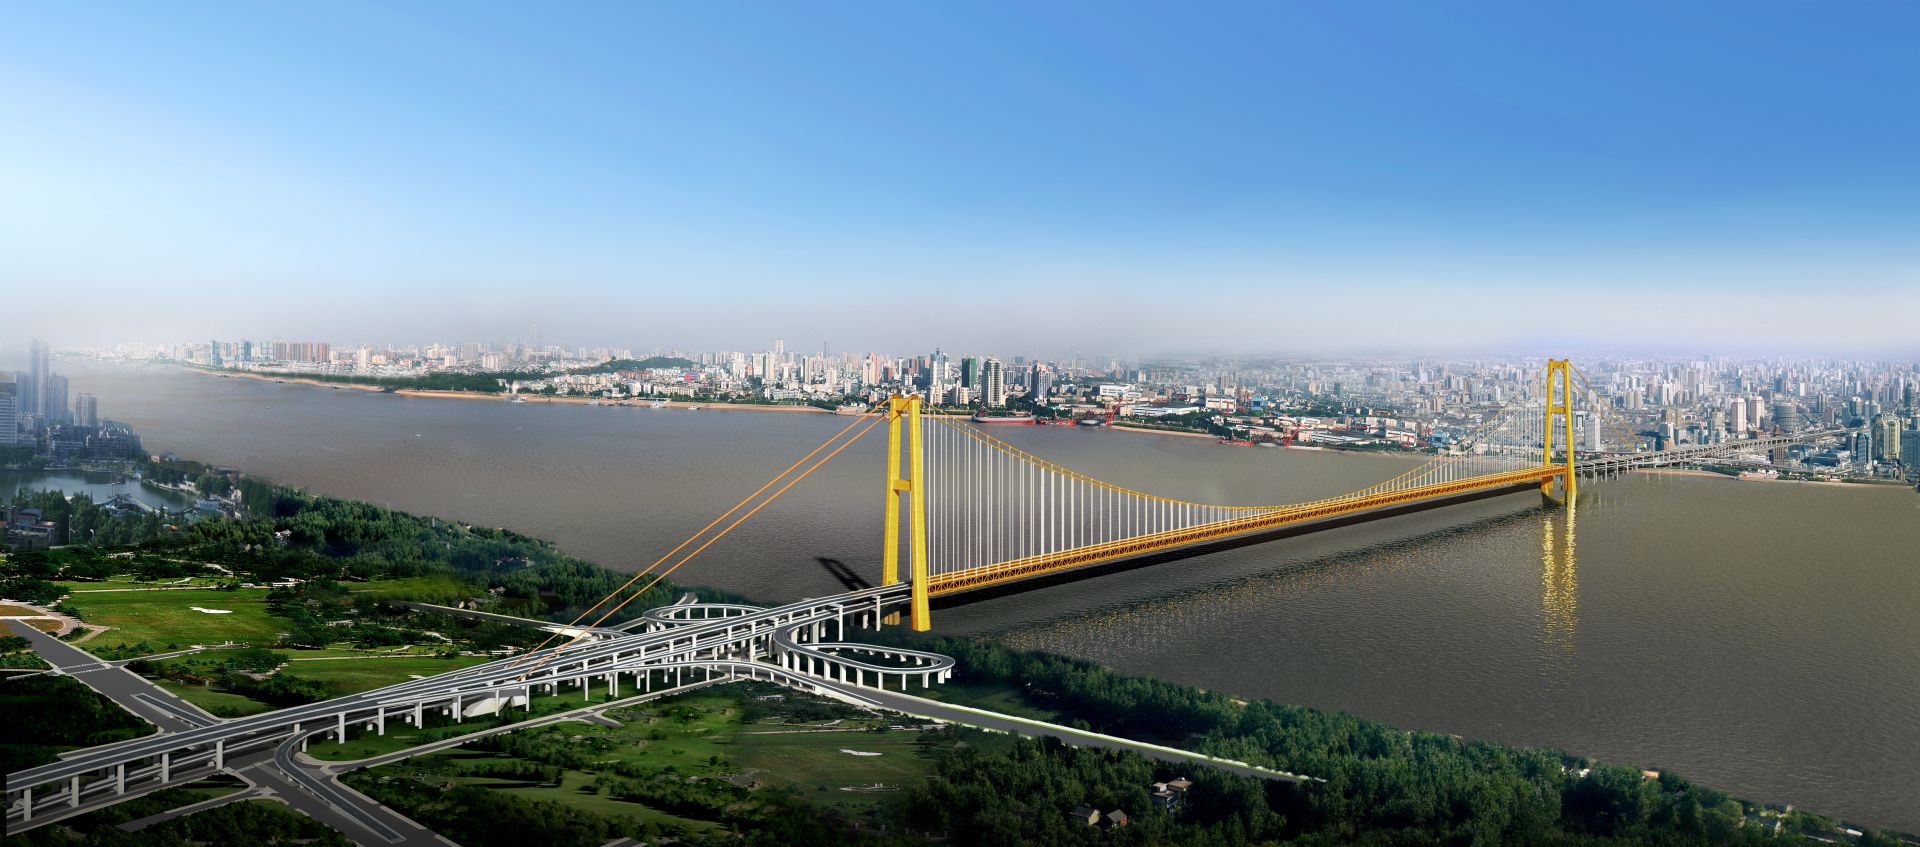 世界最大跨度双层公路悬索桥——武汉杨泗港长江大桥主跨首个整节钢梁